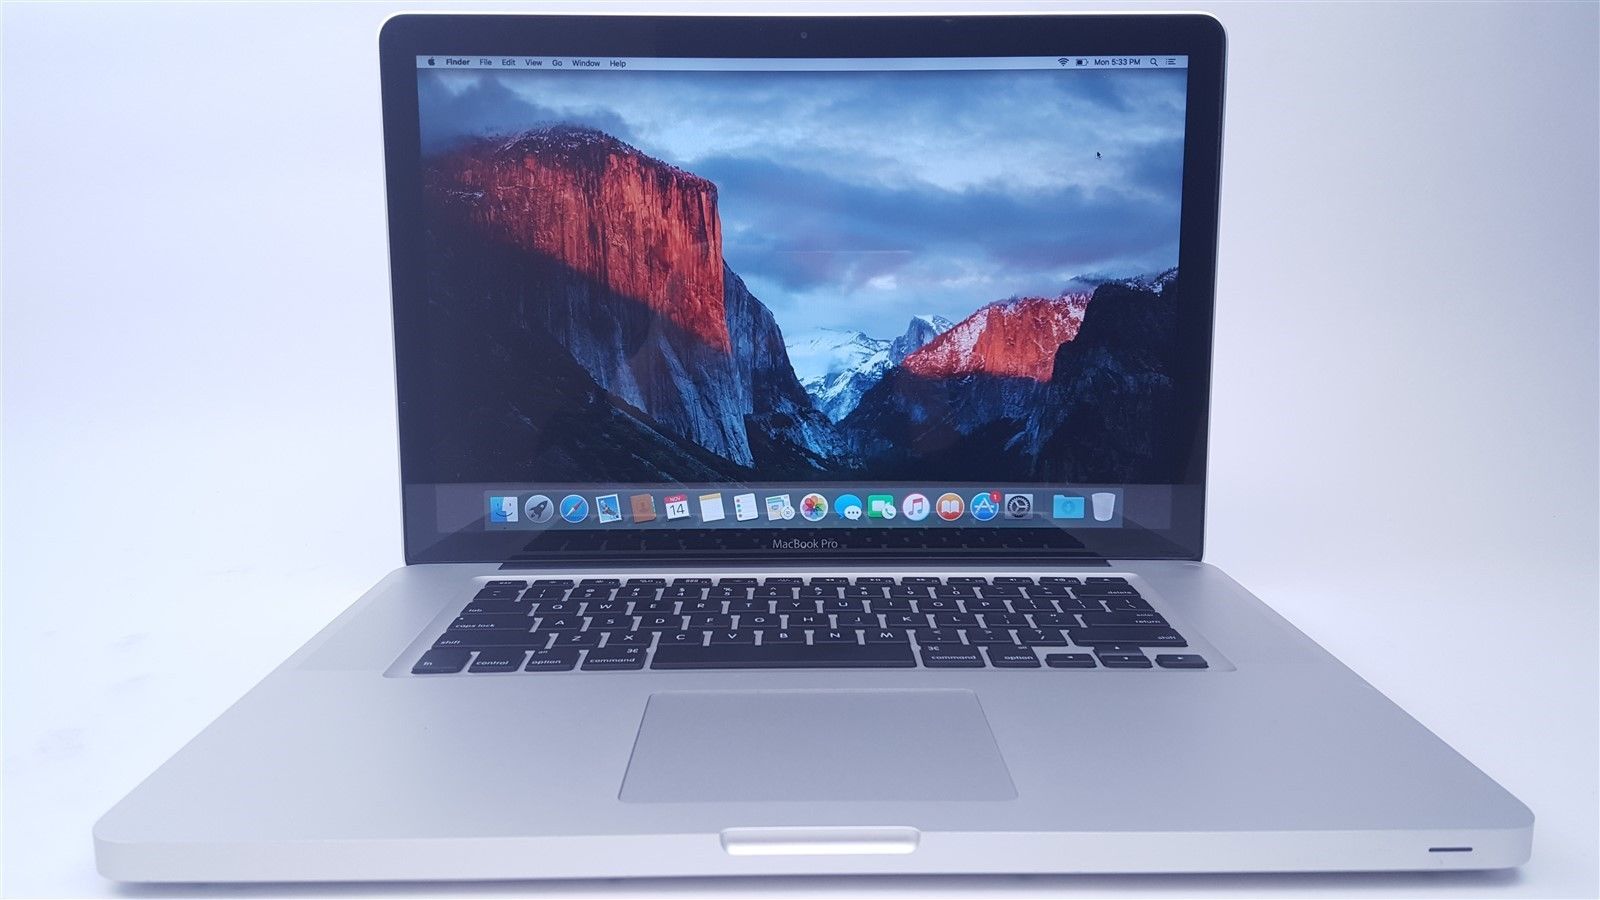 apple macbook pro a1286 i7 specs